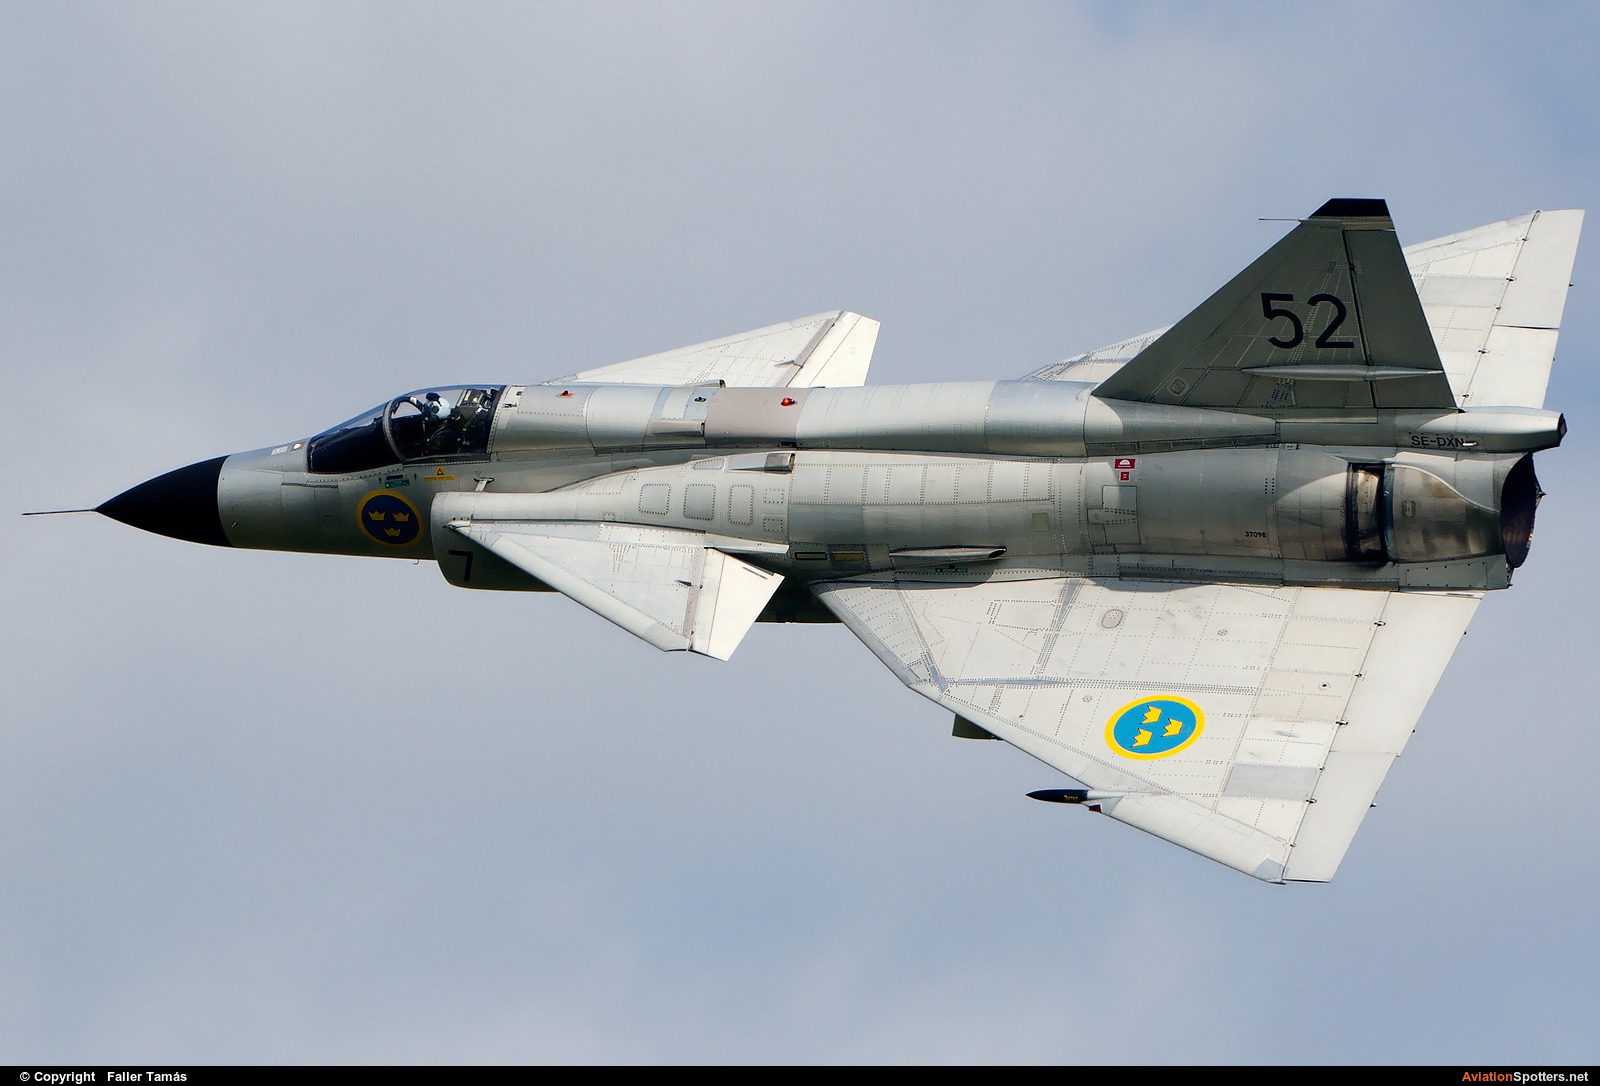 Swedish Air Force Historic Flight  -  AJS 37 Viggen  (SE-DXN) By Faller Tamás (fallto78)